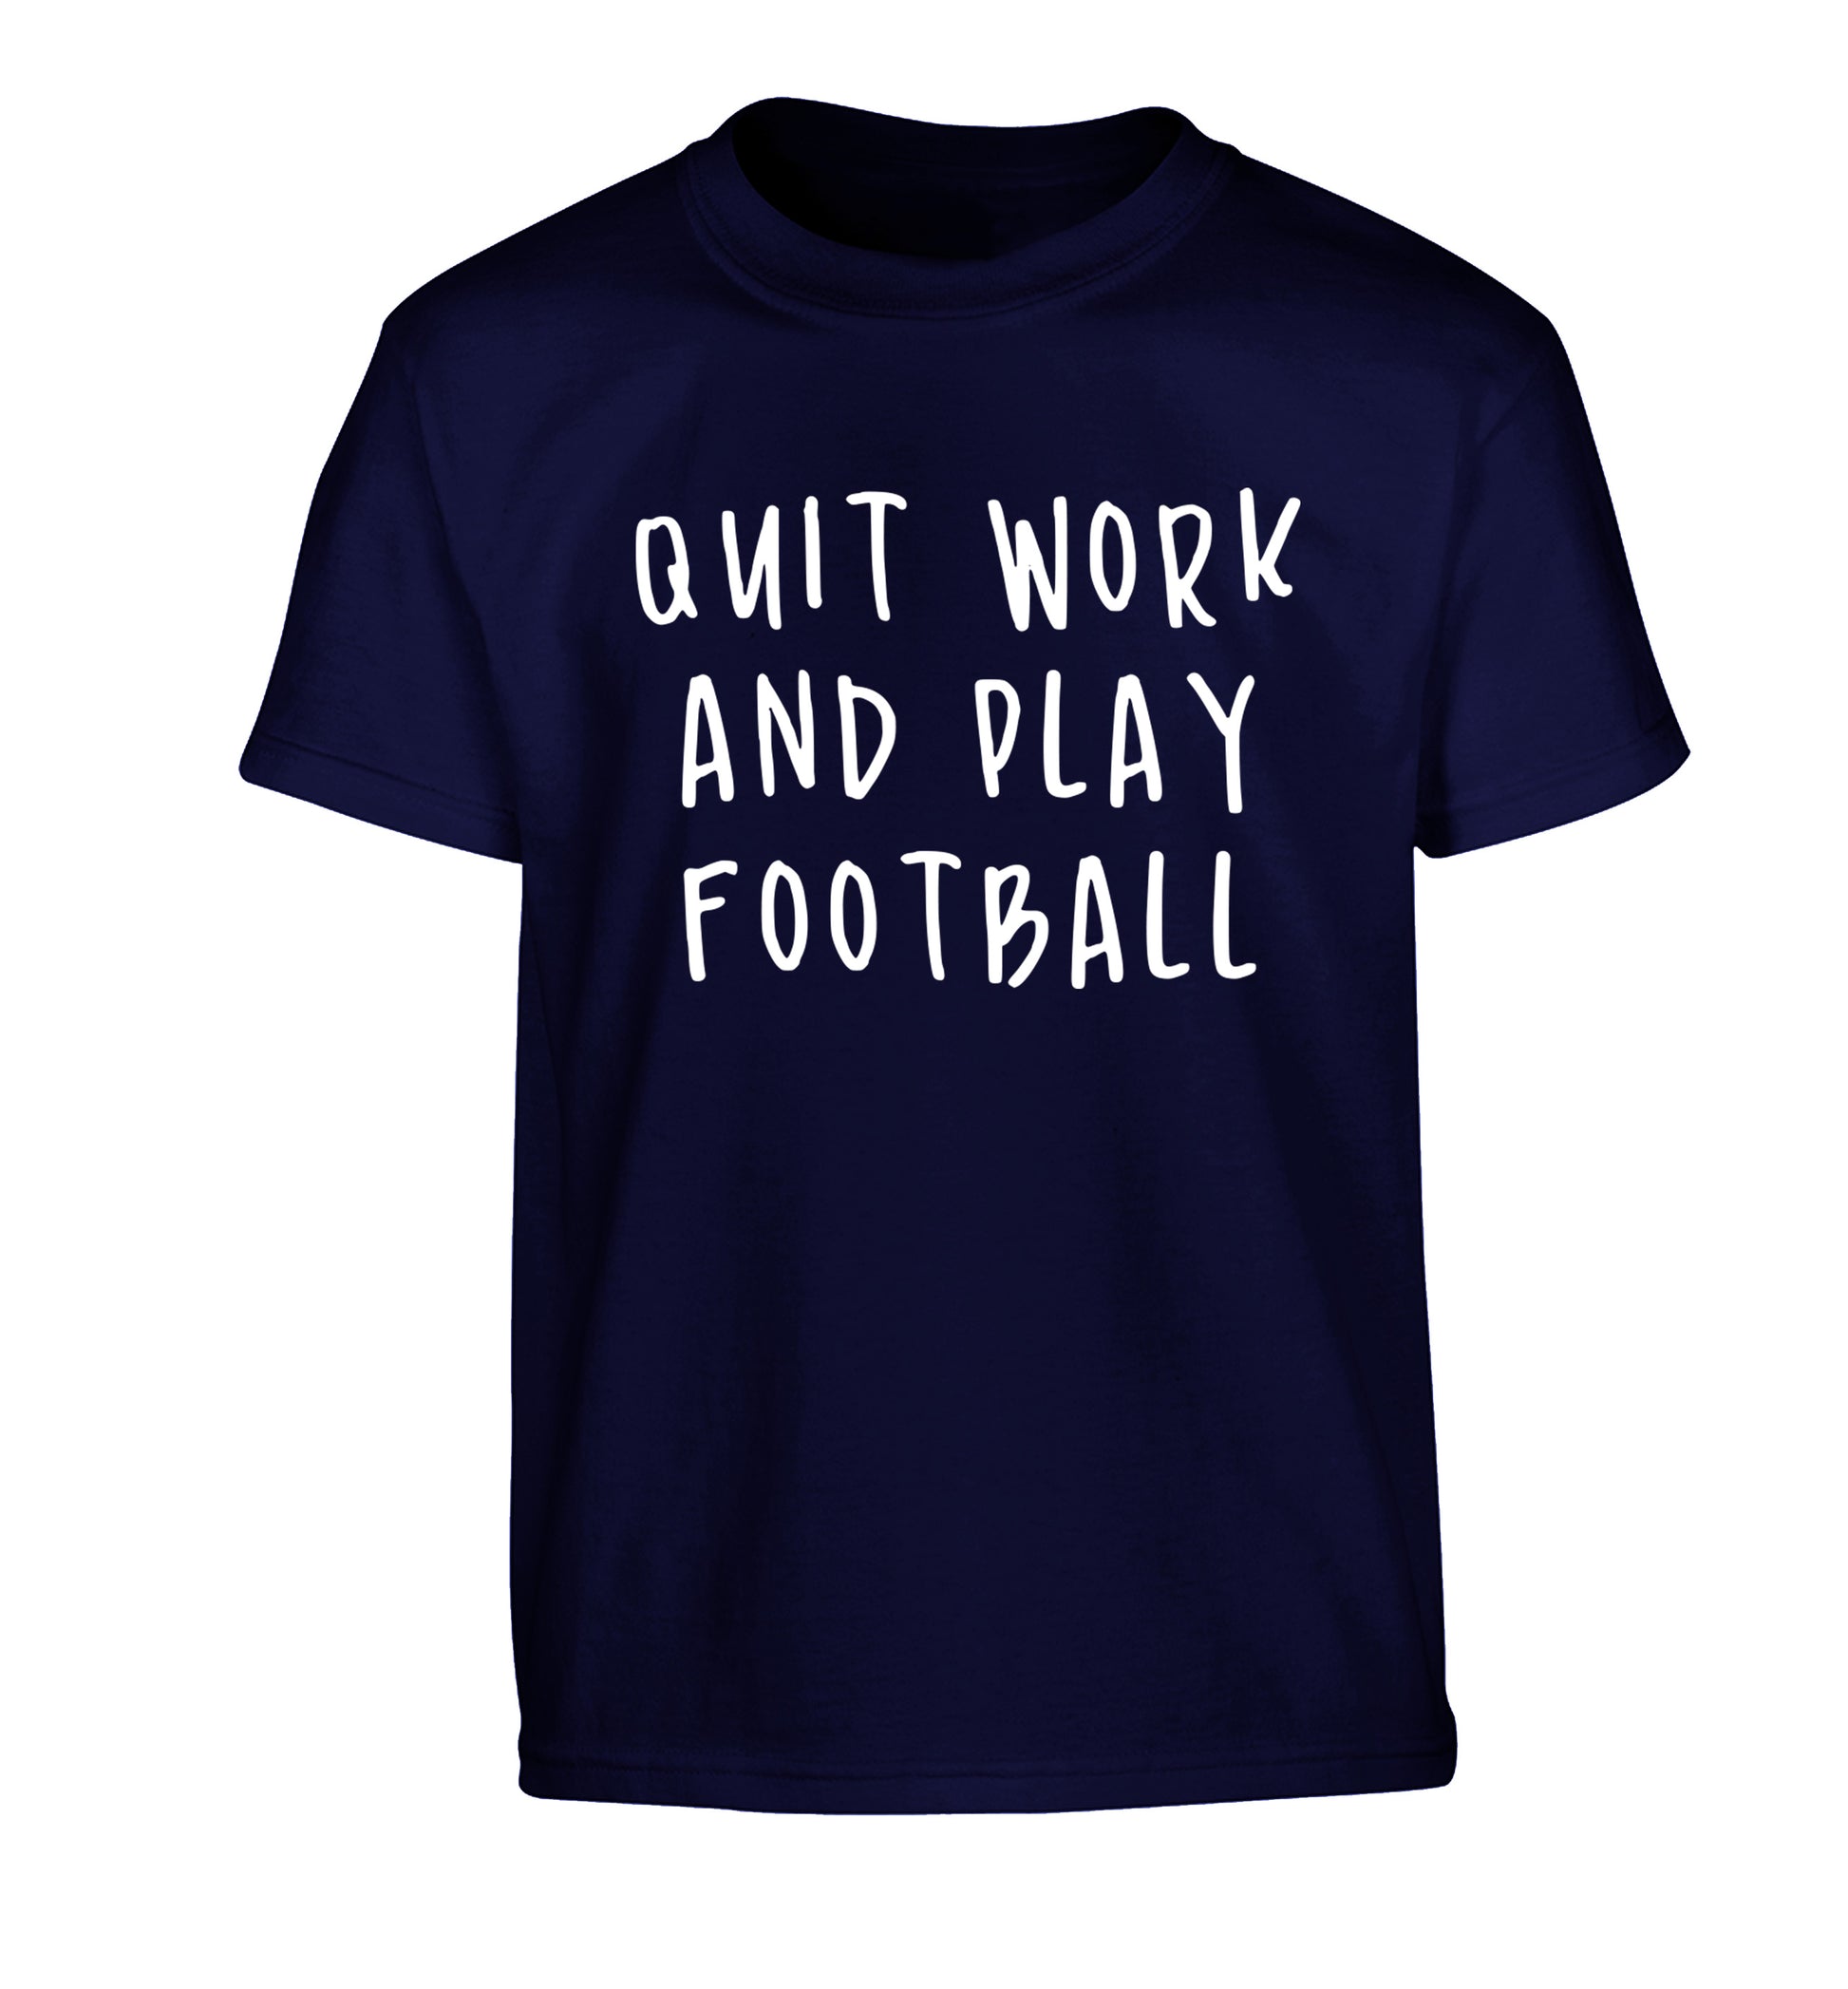 Quit work play football Children's navy Tshirt 12-14 Years